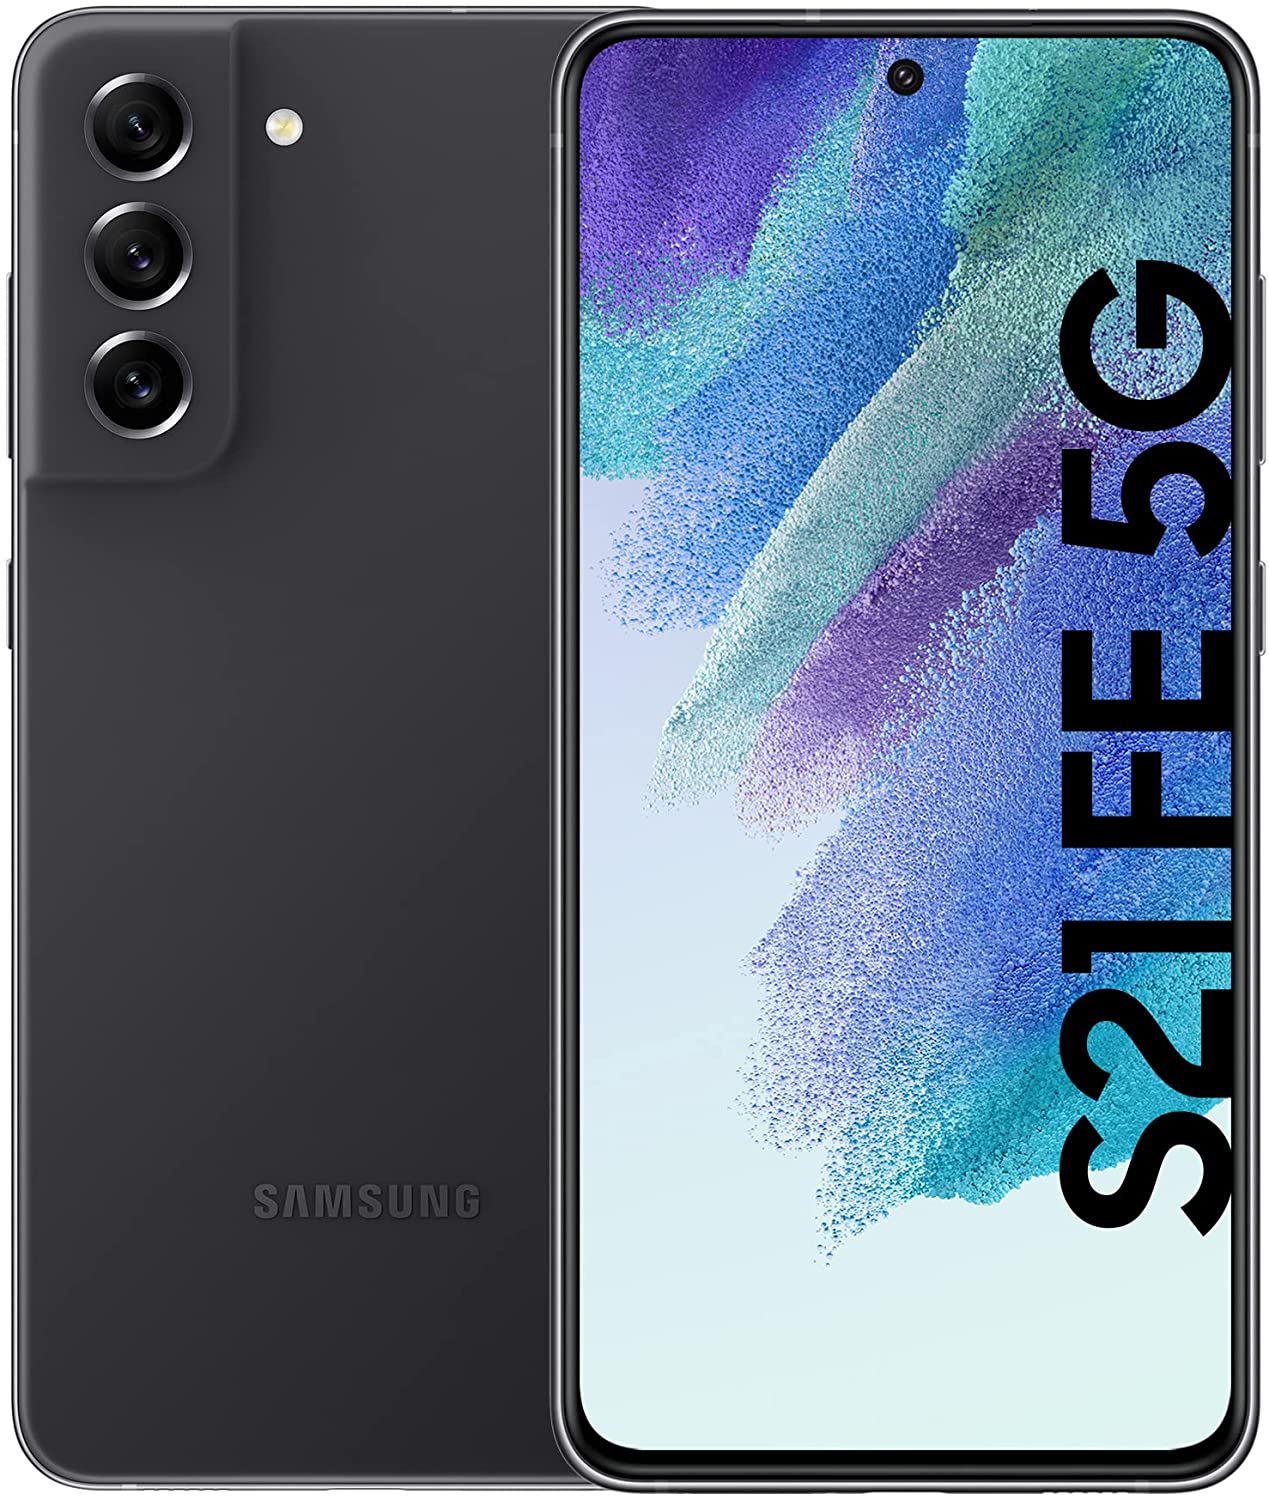 Samsung Galaxy S21 FE LTE/5G (G990B) 128GB grey Smartphone DS hervorragend